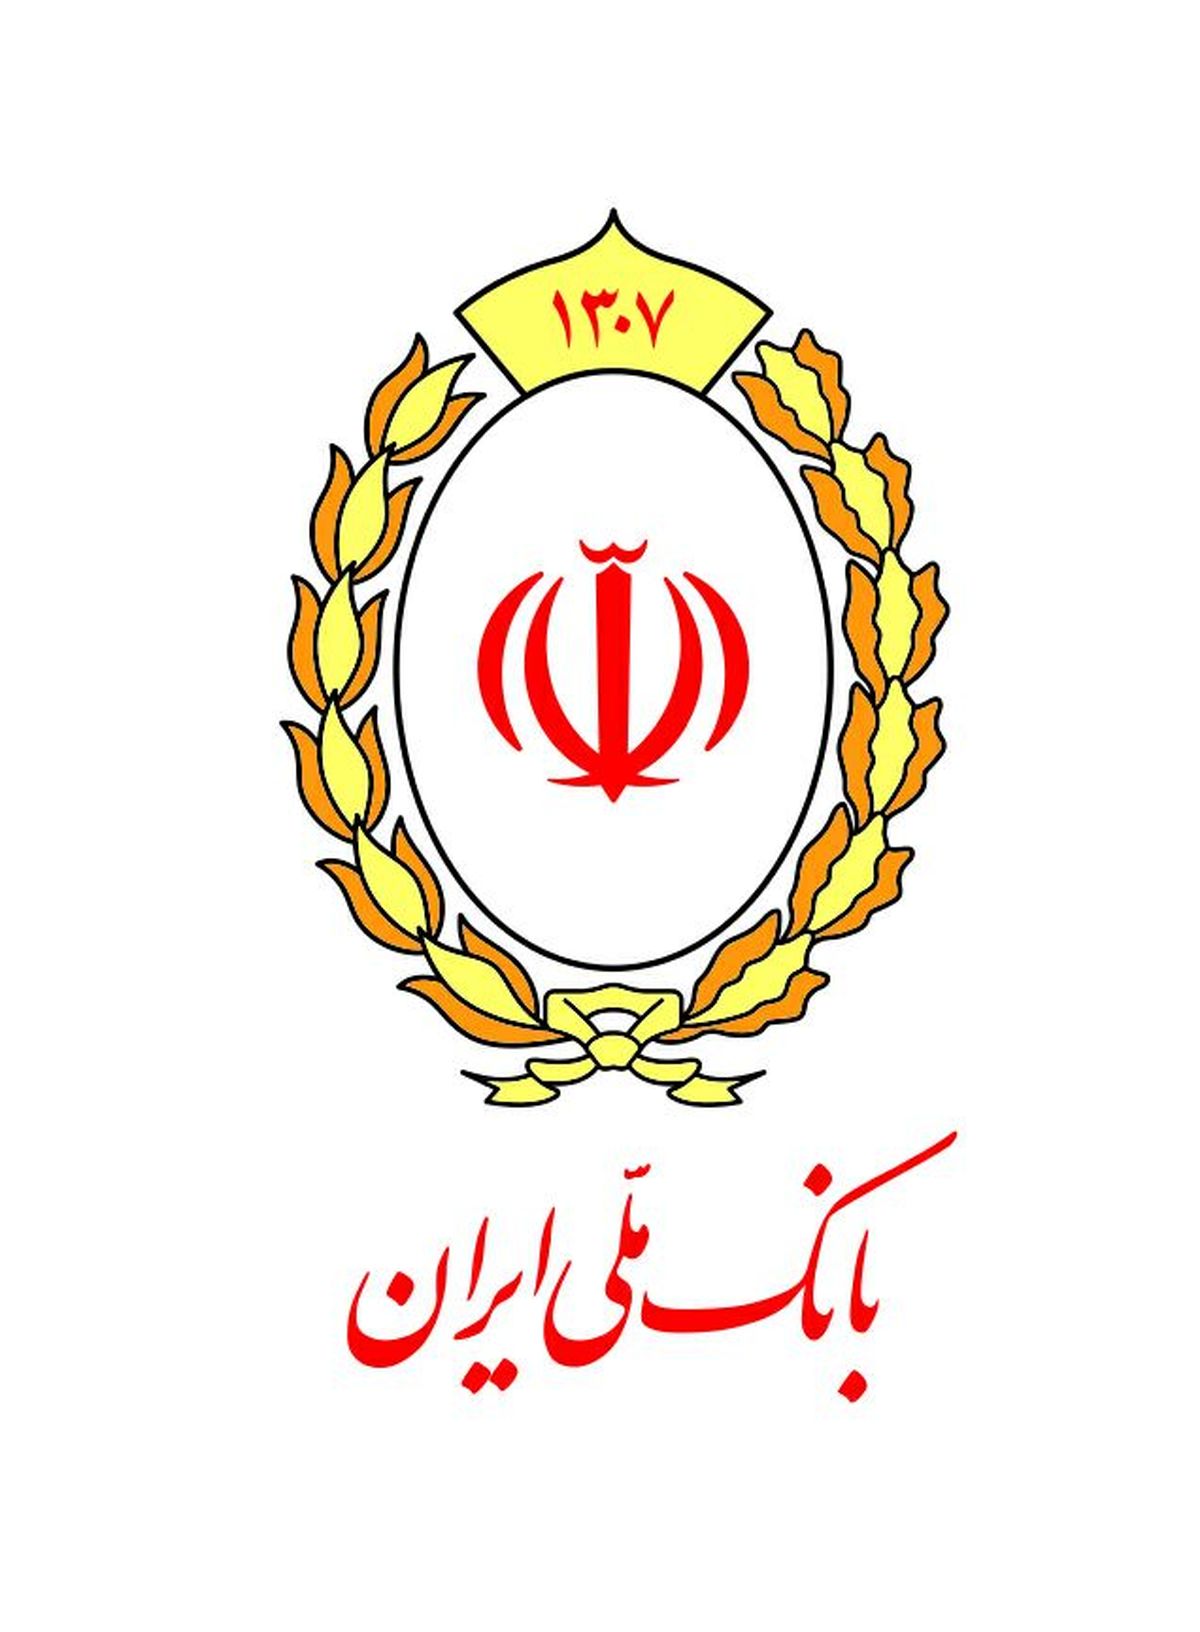 بیانیه رسمی بانک ملی ایران درباره برخی فضاسازی های تخریبی علیه این بانک